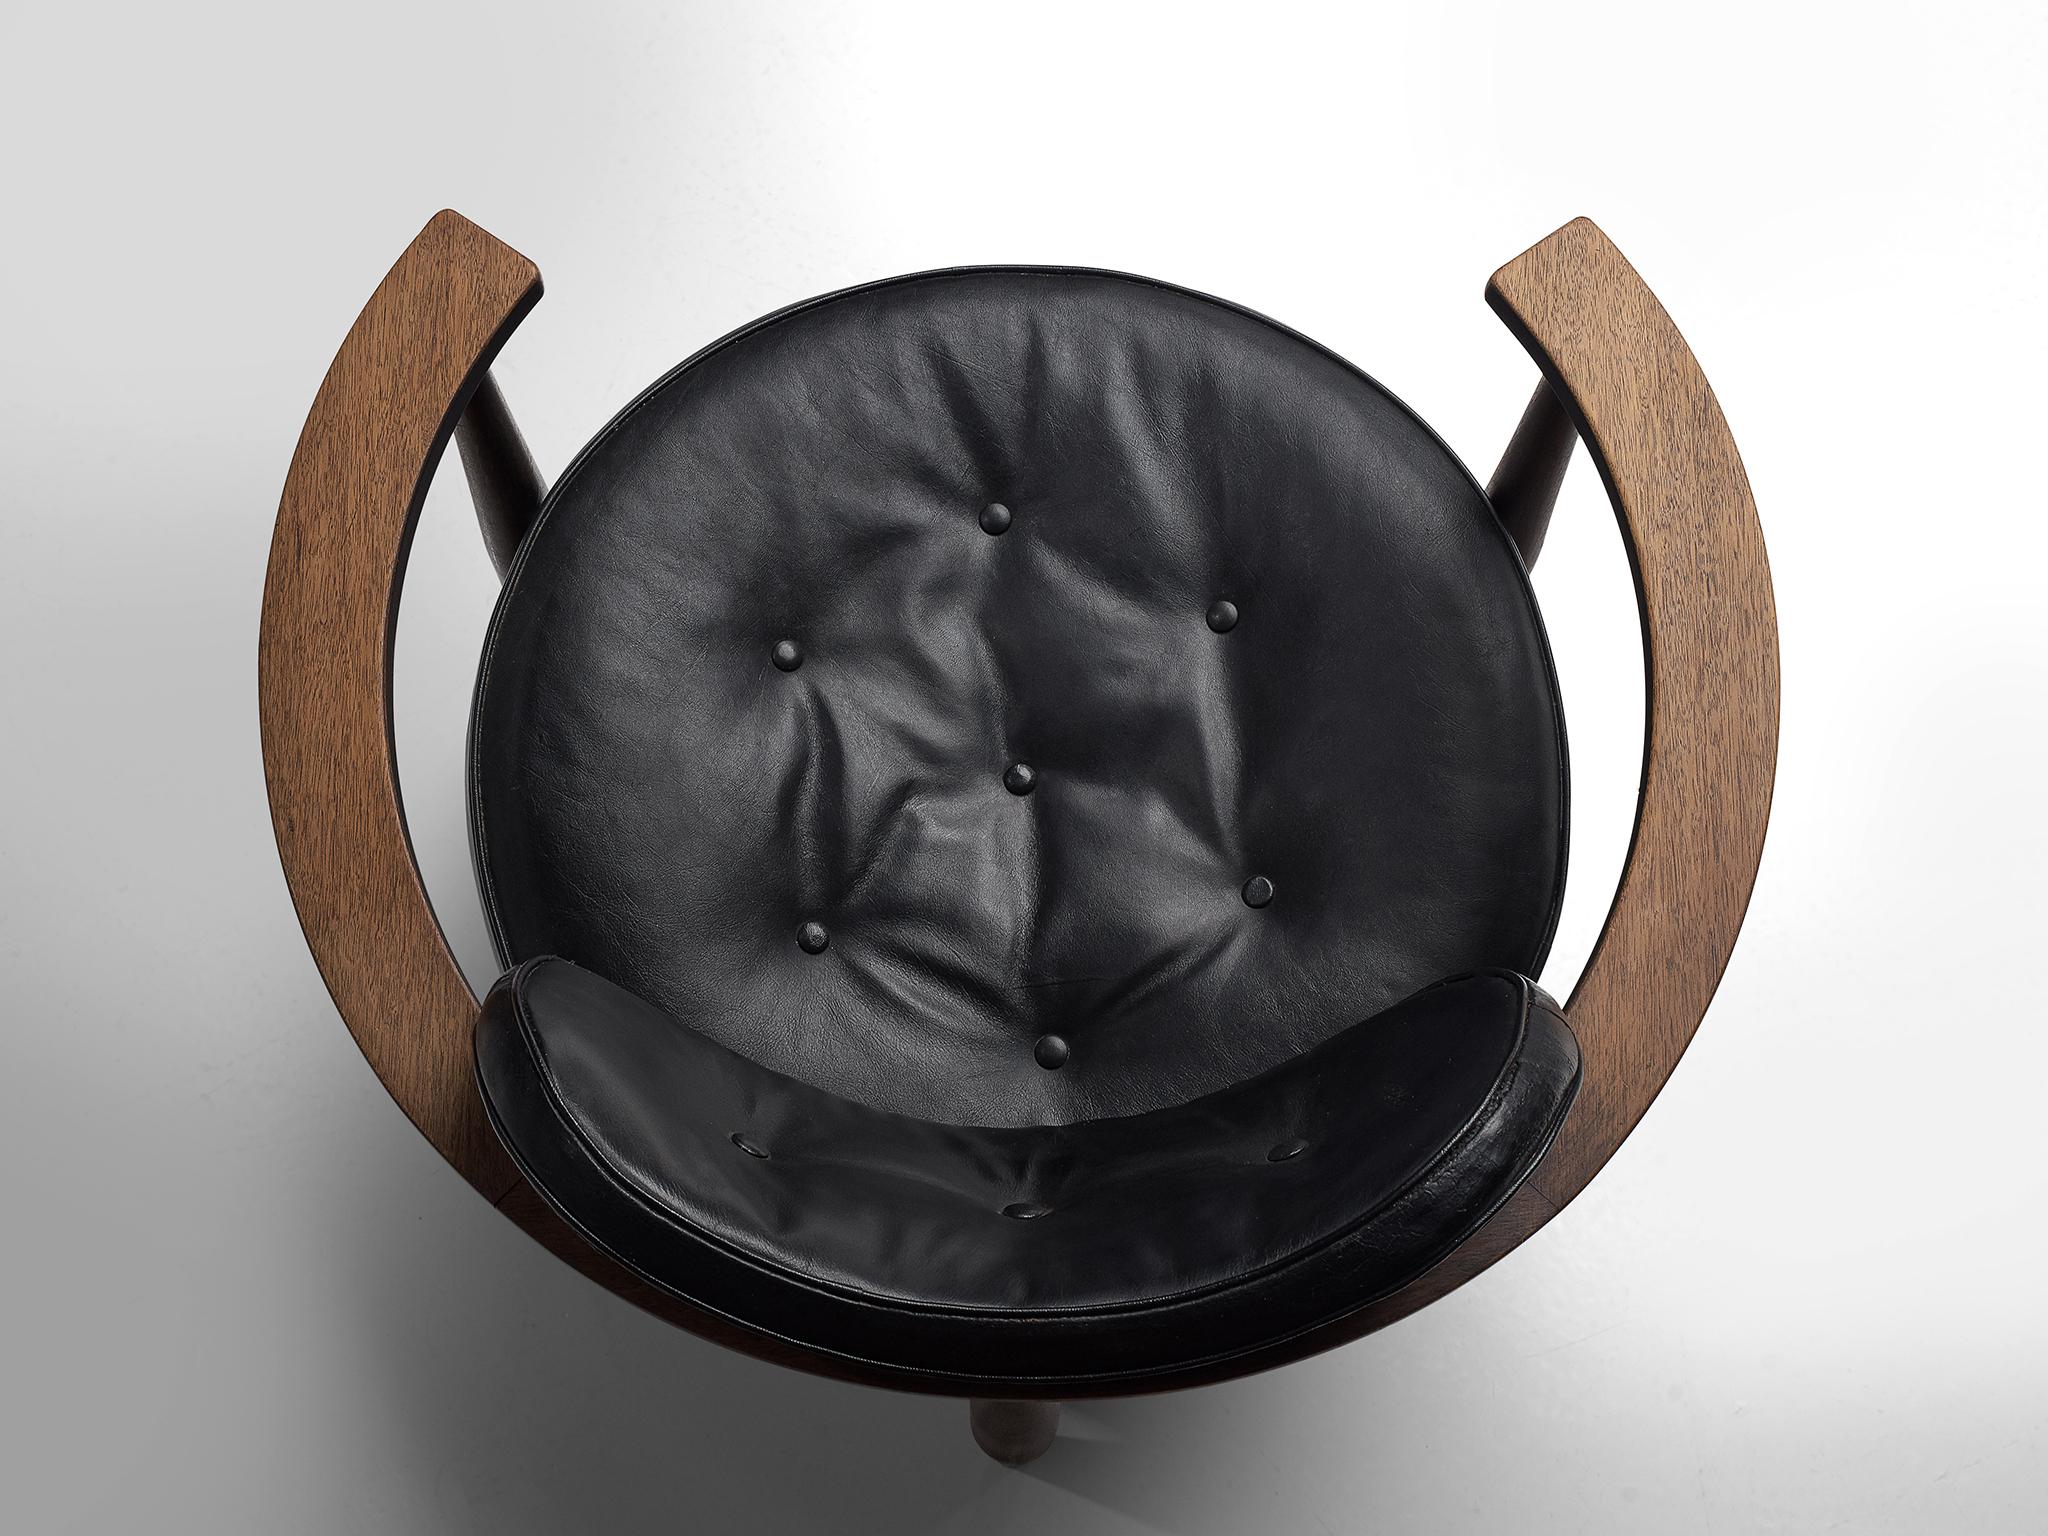 Mid-20th Century Restored Kor Aldershof Lounge Chair in Black Leather